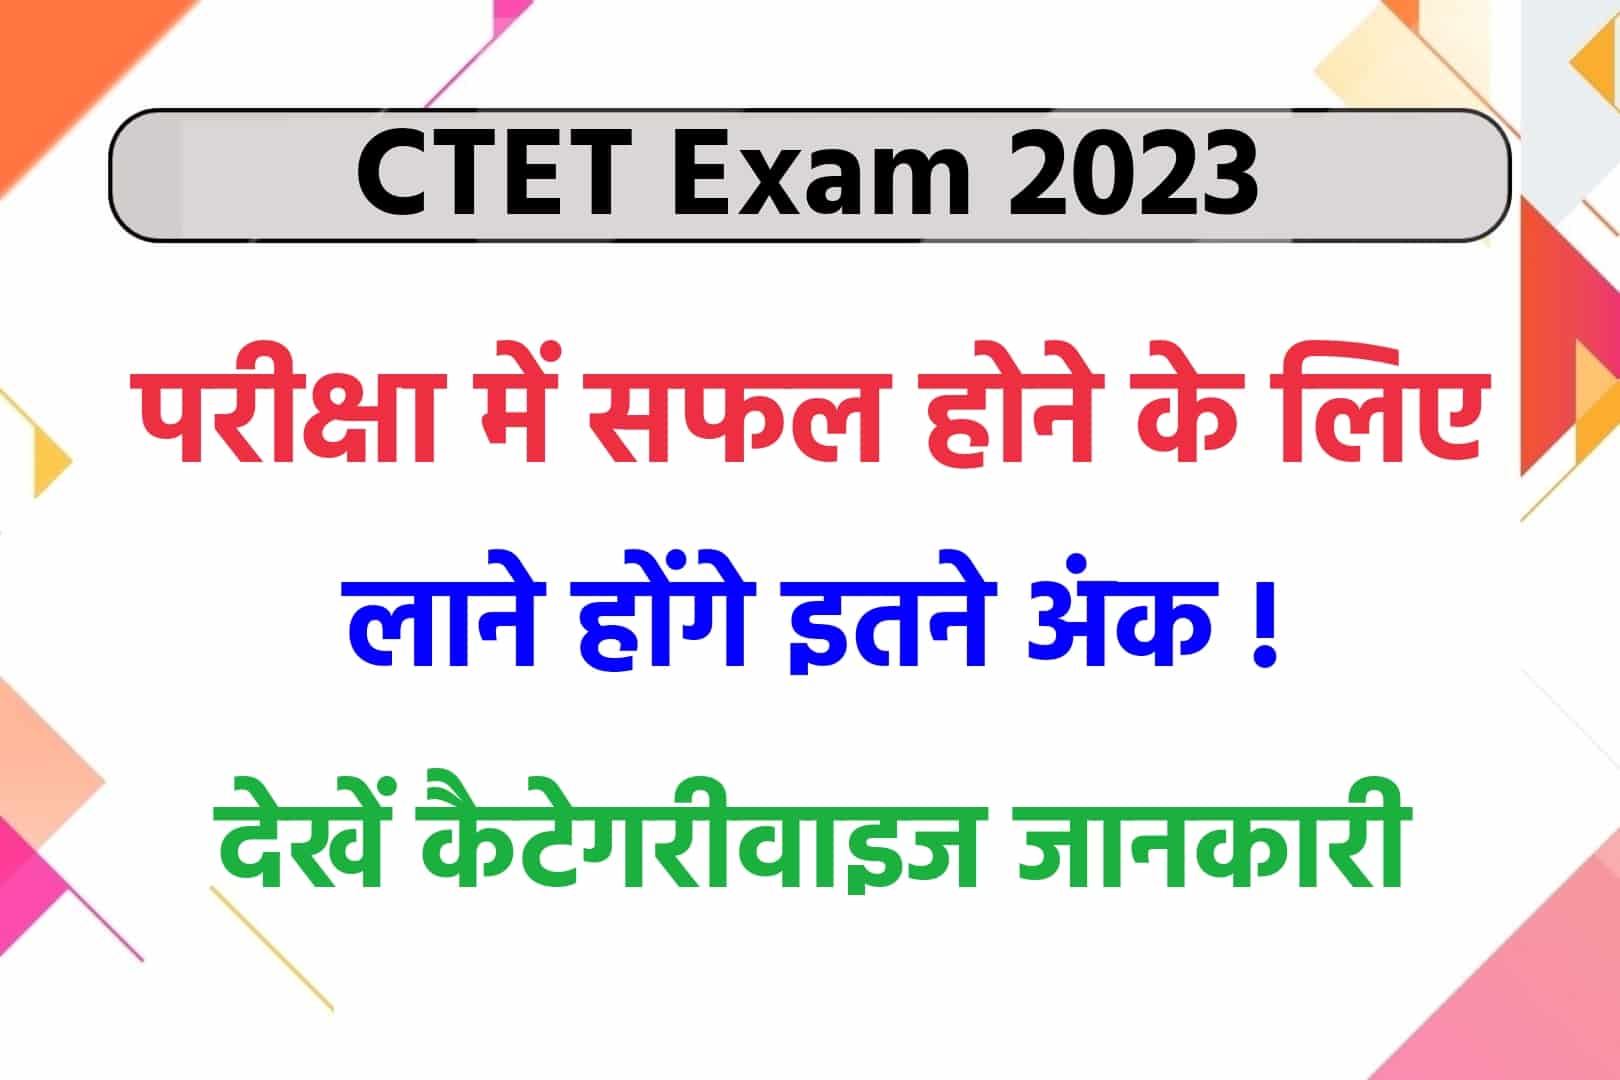 CTET Exam 2023: CTET परीक्षा में सफल होने के लिए लाने होंगे इतने अंक, देखें